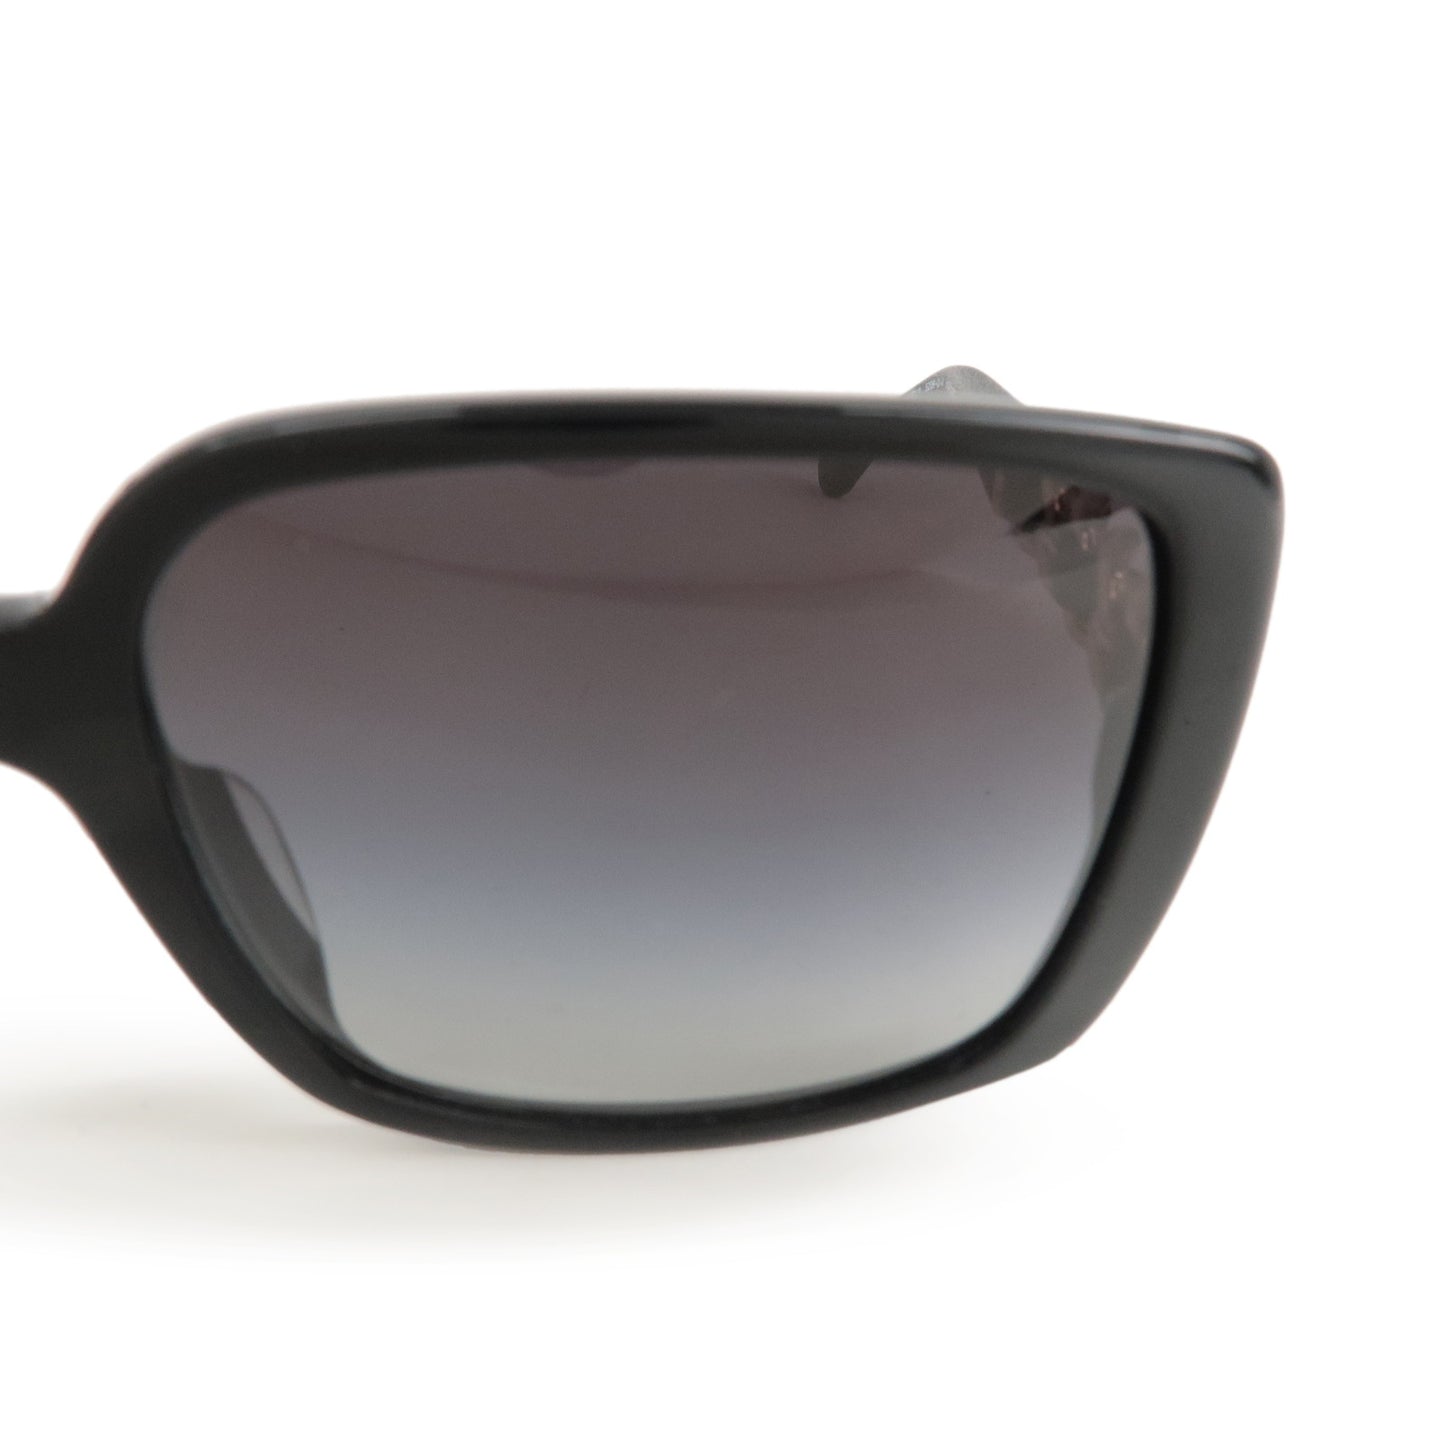 CHANEL-Sunglasses-Leather-Plastic-C.622/3C-58□135-3N-Black-5208QA